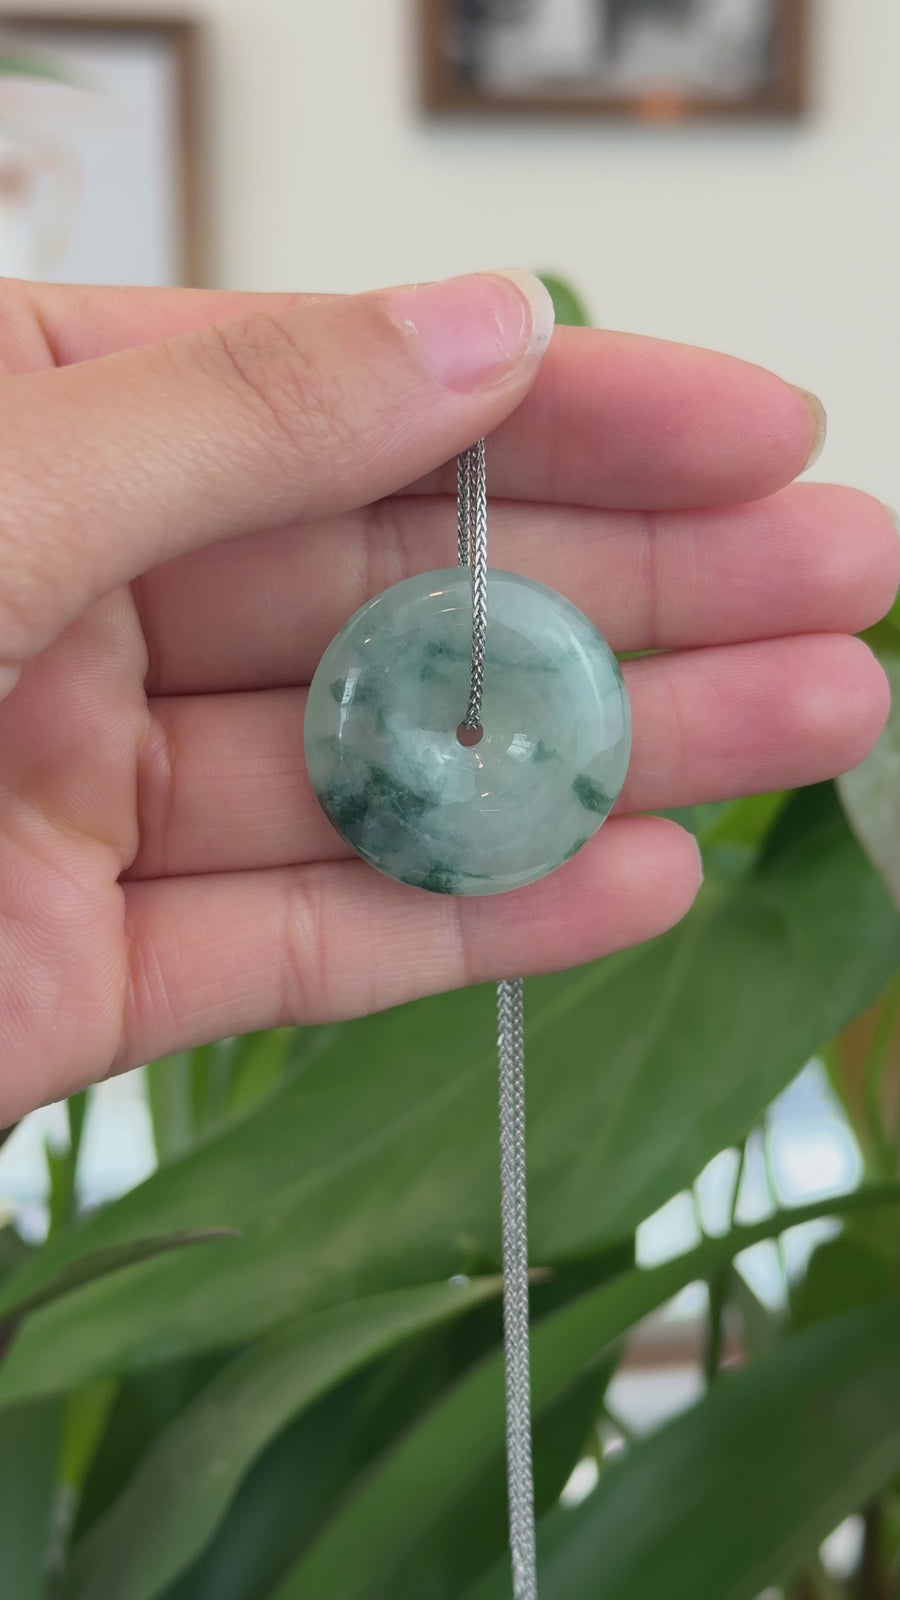 Baikalla™ "Good Luck Button" Necklace Ice Blue Green Jadeite Jade Lucky KouKou Pendant Necklace